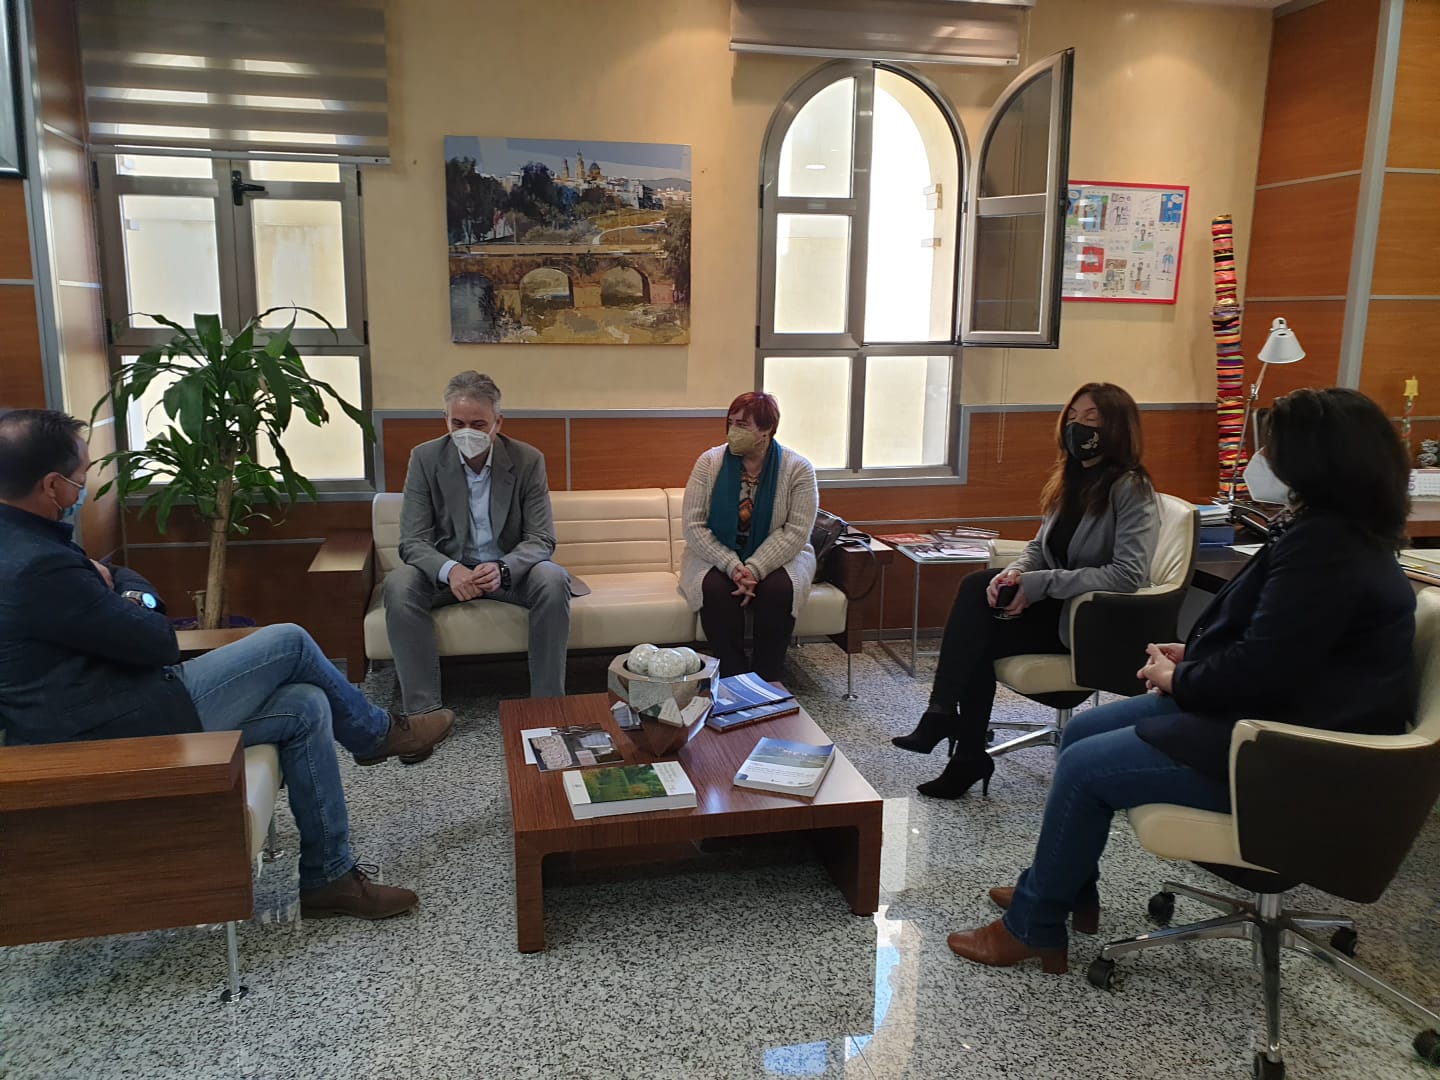 L'alcalde de Riba-roja es reuneix amb el vicepresident del Consell per a analitzar les poltiques d'habitatge en el municipi